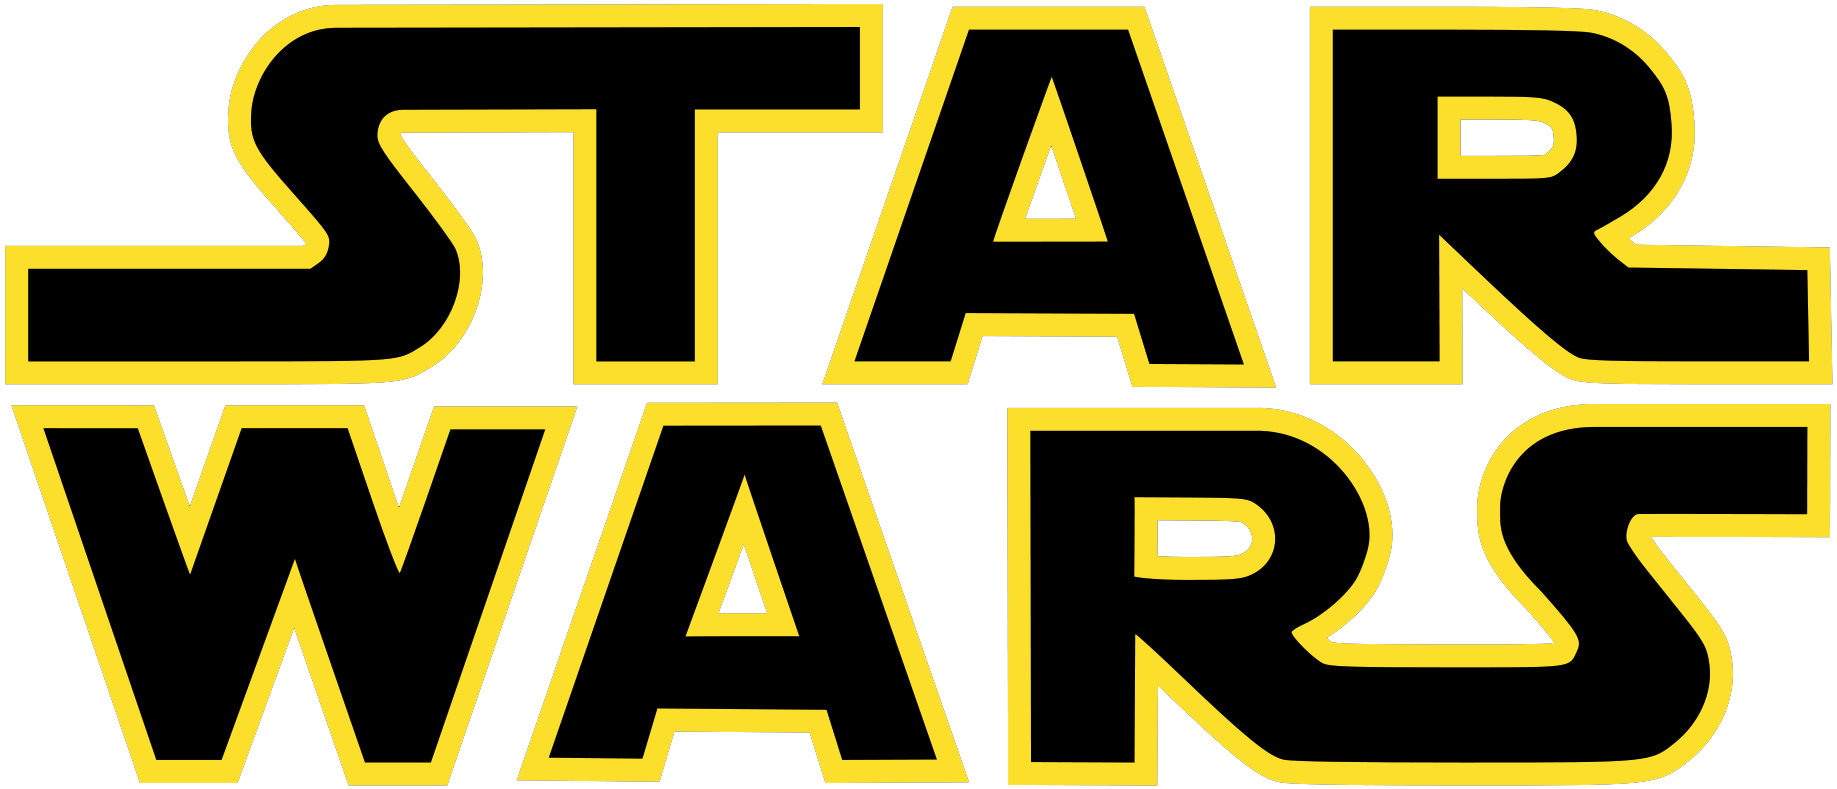 Starwars-logo.png